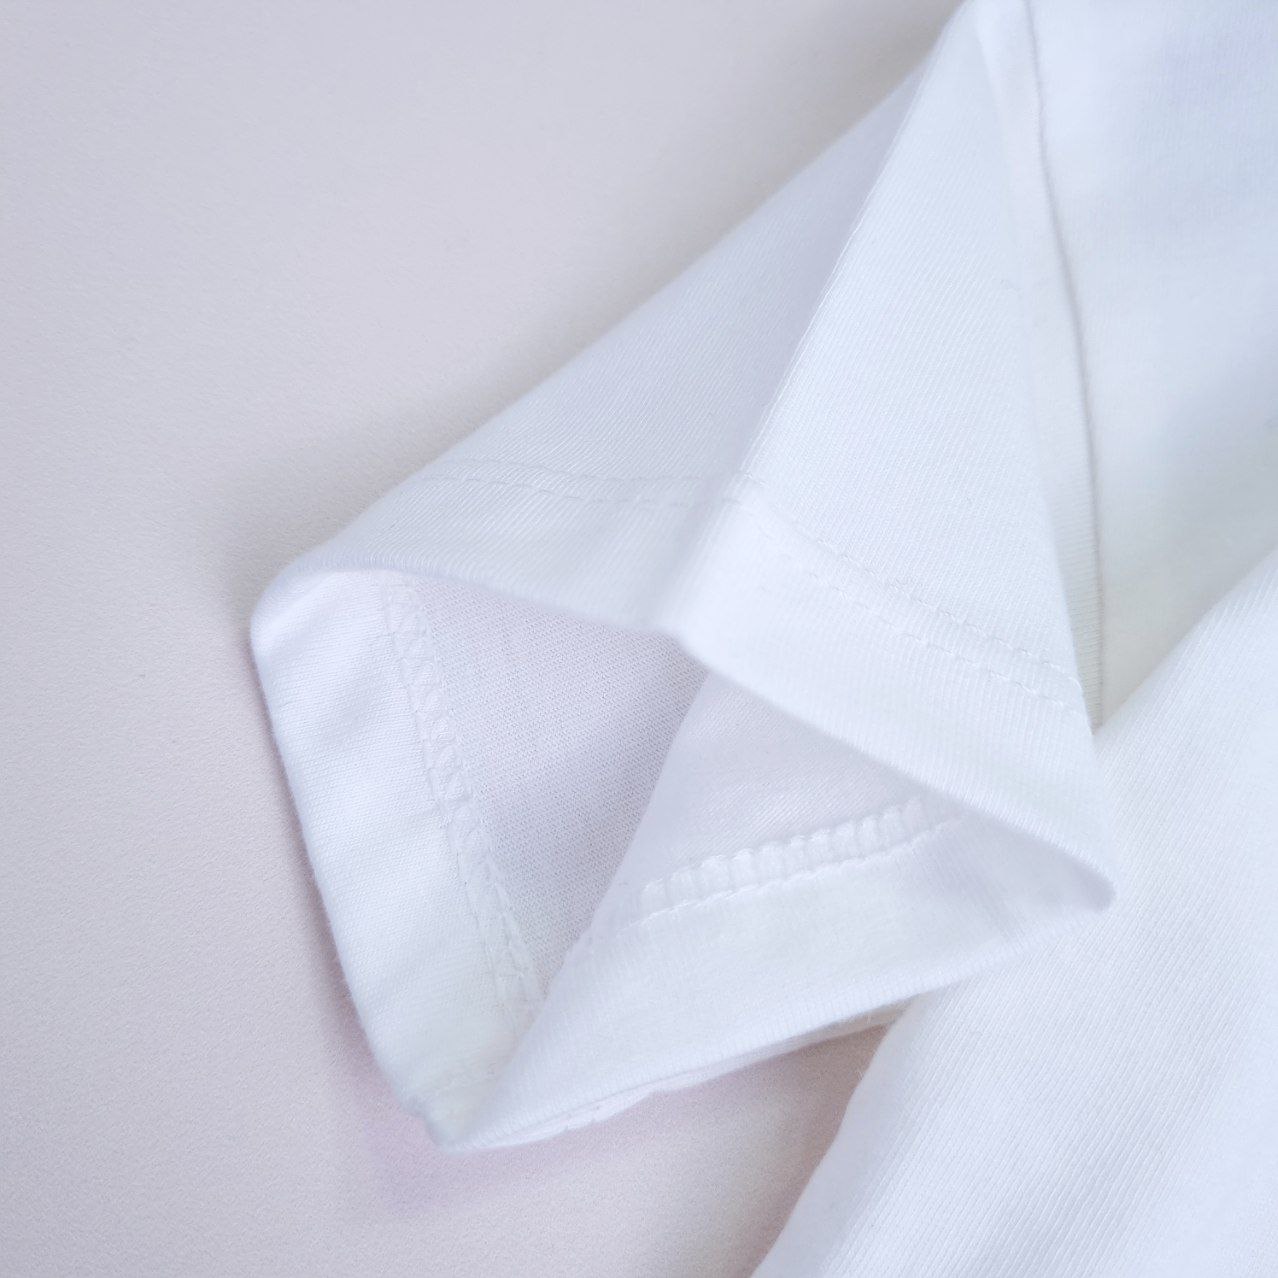 عکس تک تیشرت سفید اسپرت ساده - شماره 4